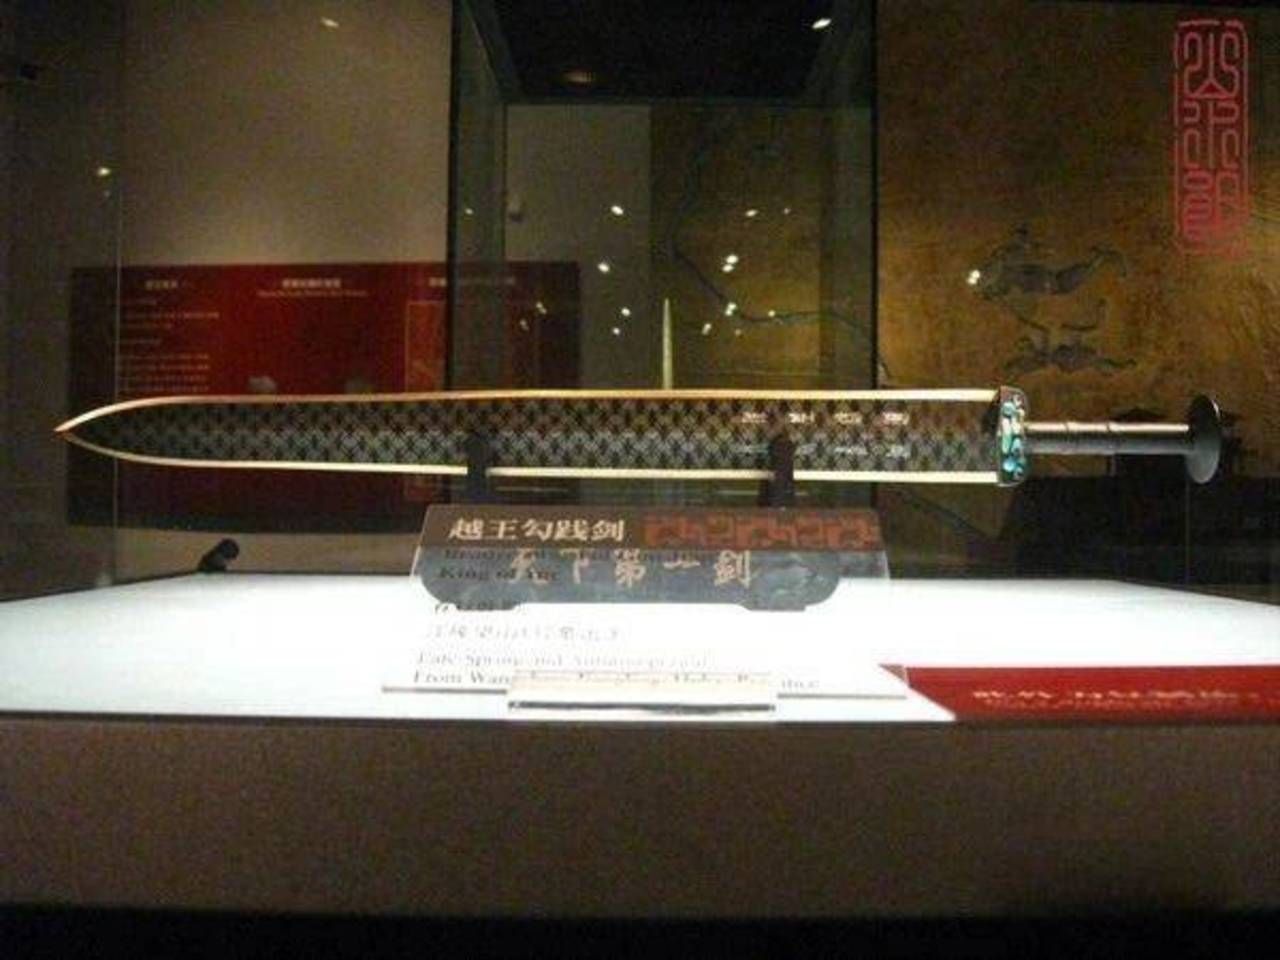 湖北省博物馆推出“越王勾践剑”立体公交卡，全国300+城市可用